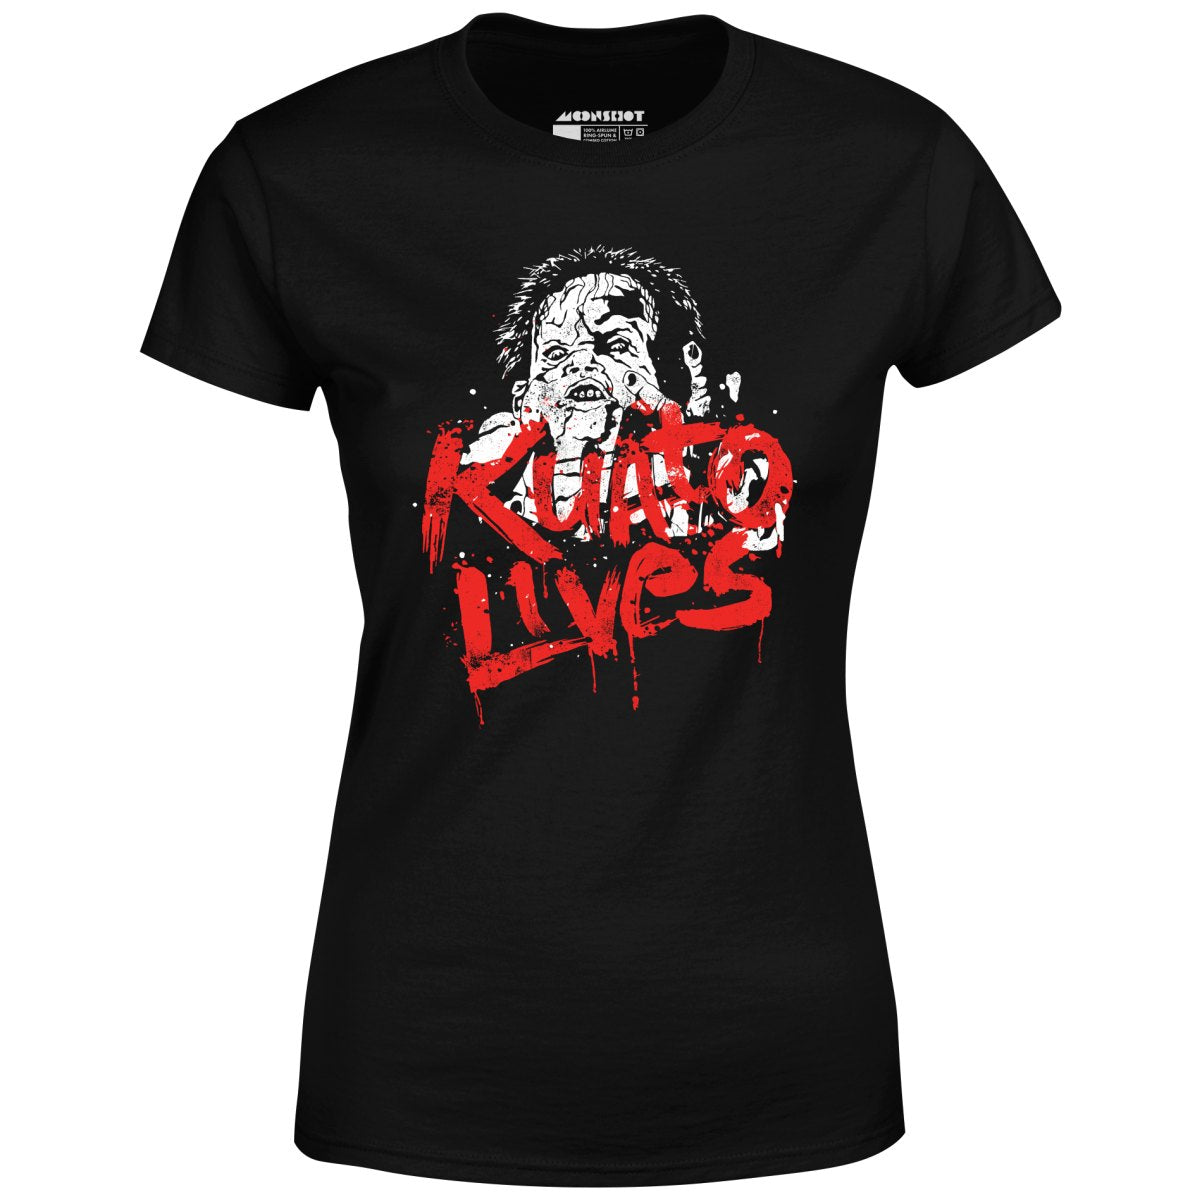 Kuato Lives - Total Recall - Women's T-Shirt